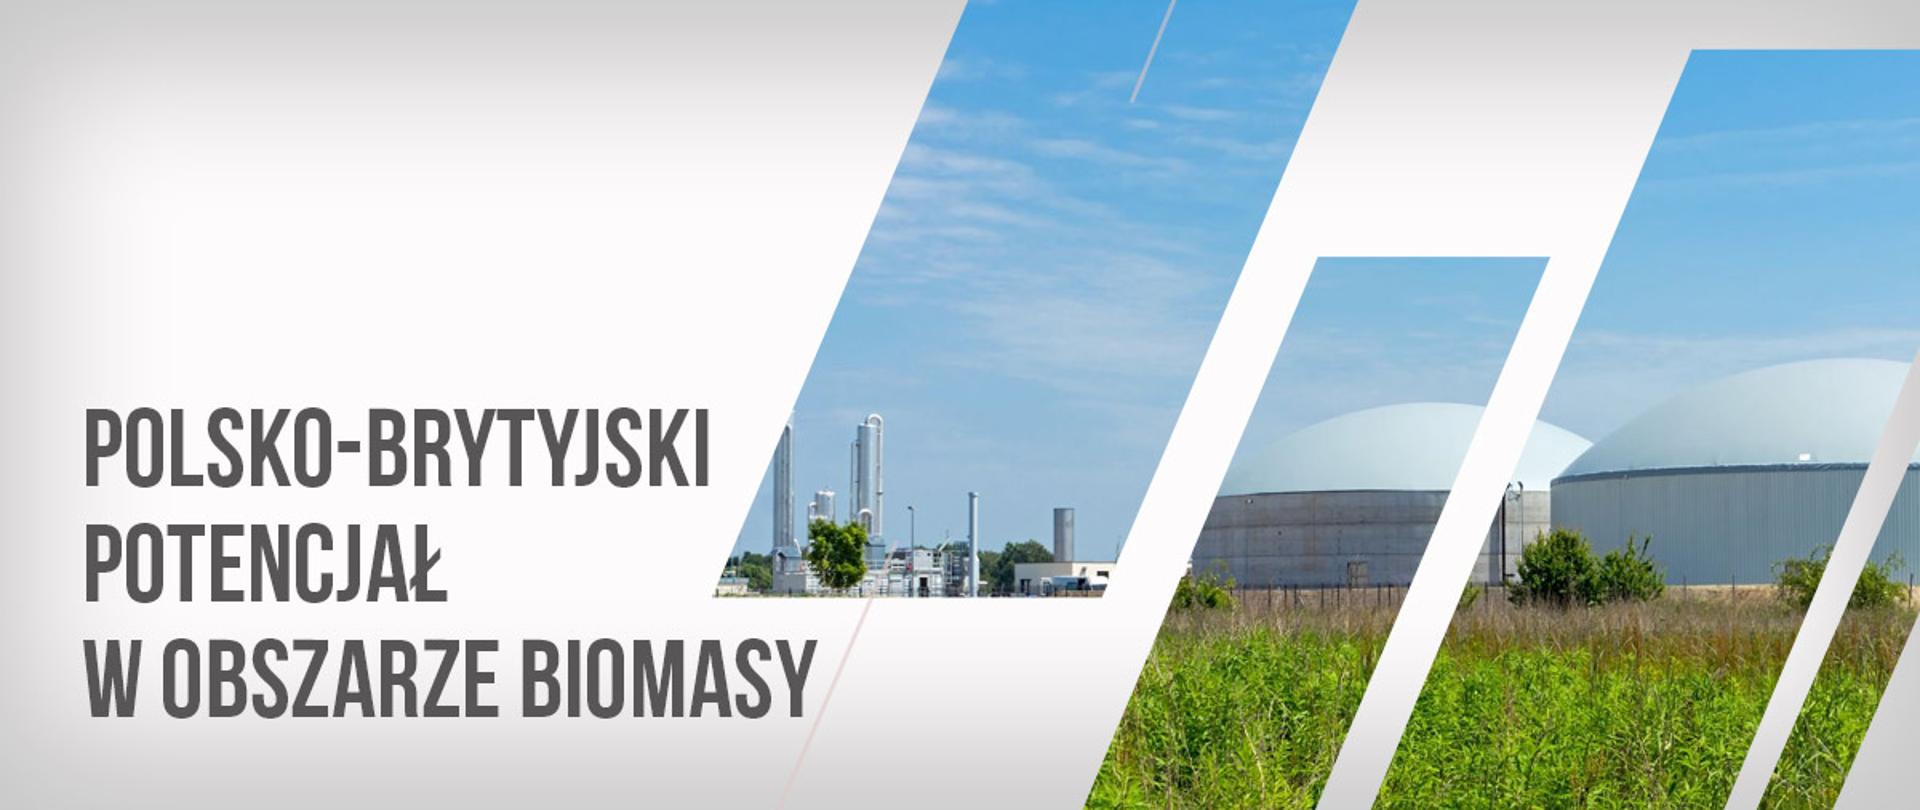 O polsko-brytyjskim potencjale w obszarze biomasy